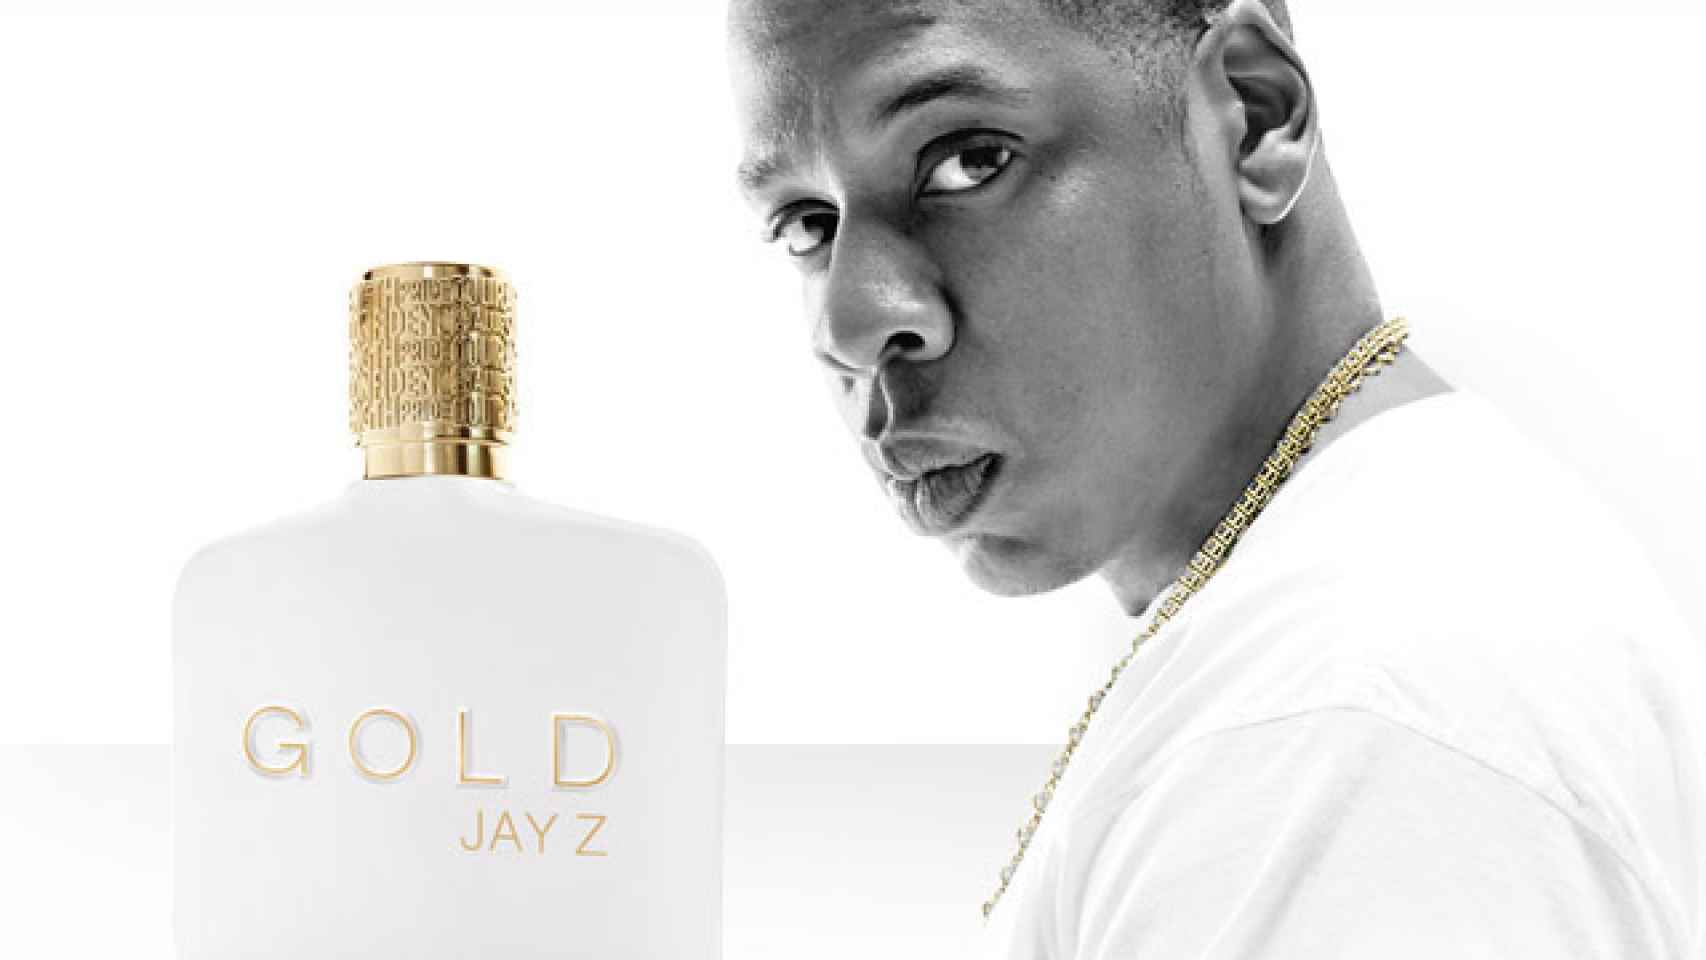 La colonia Gold de Jay-Z ha sido un absoluto fracaso